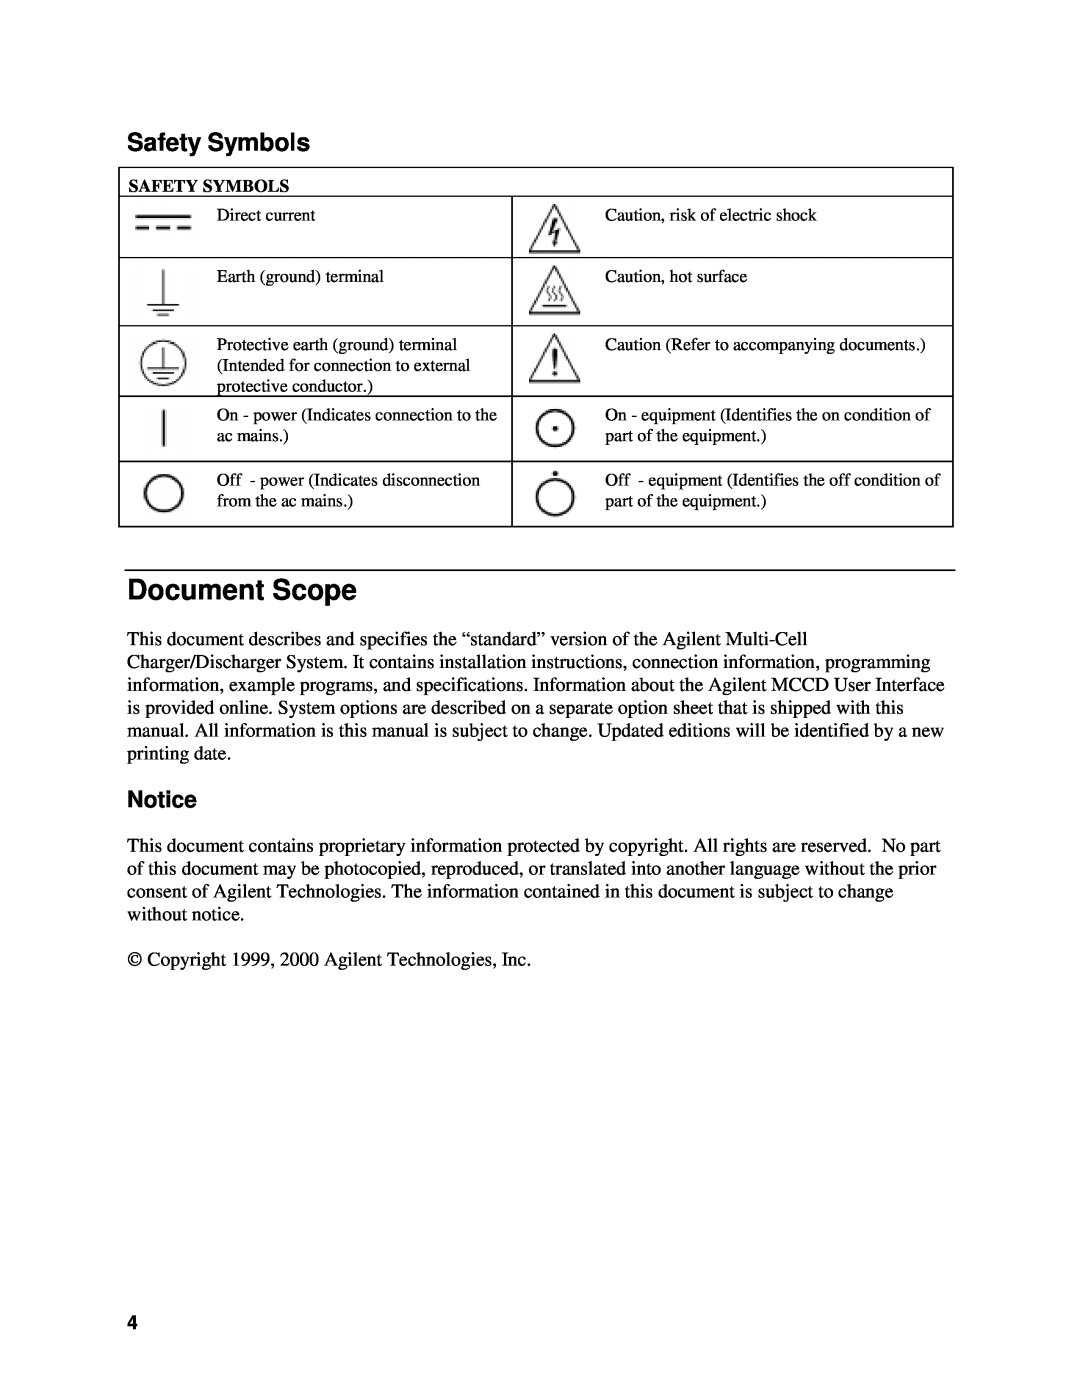 Agilent Technologies E4371A, E4370A, E4374A manual Document Scope, Safety Symbols 